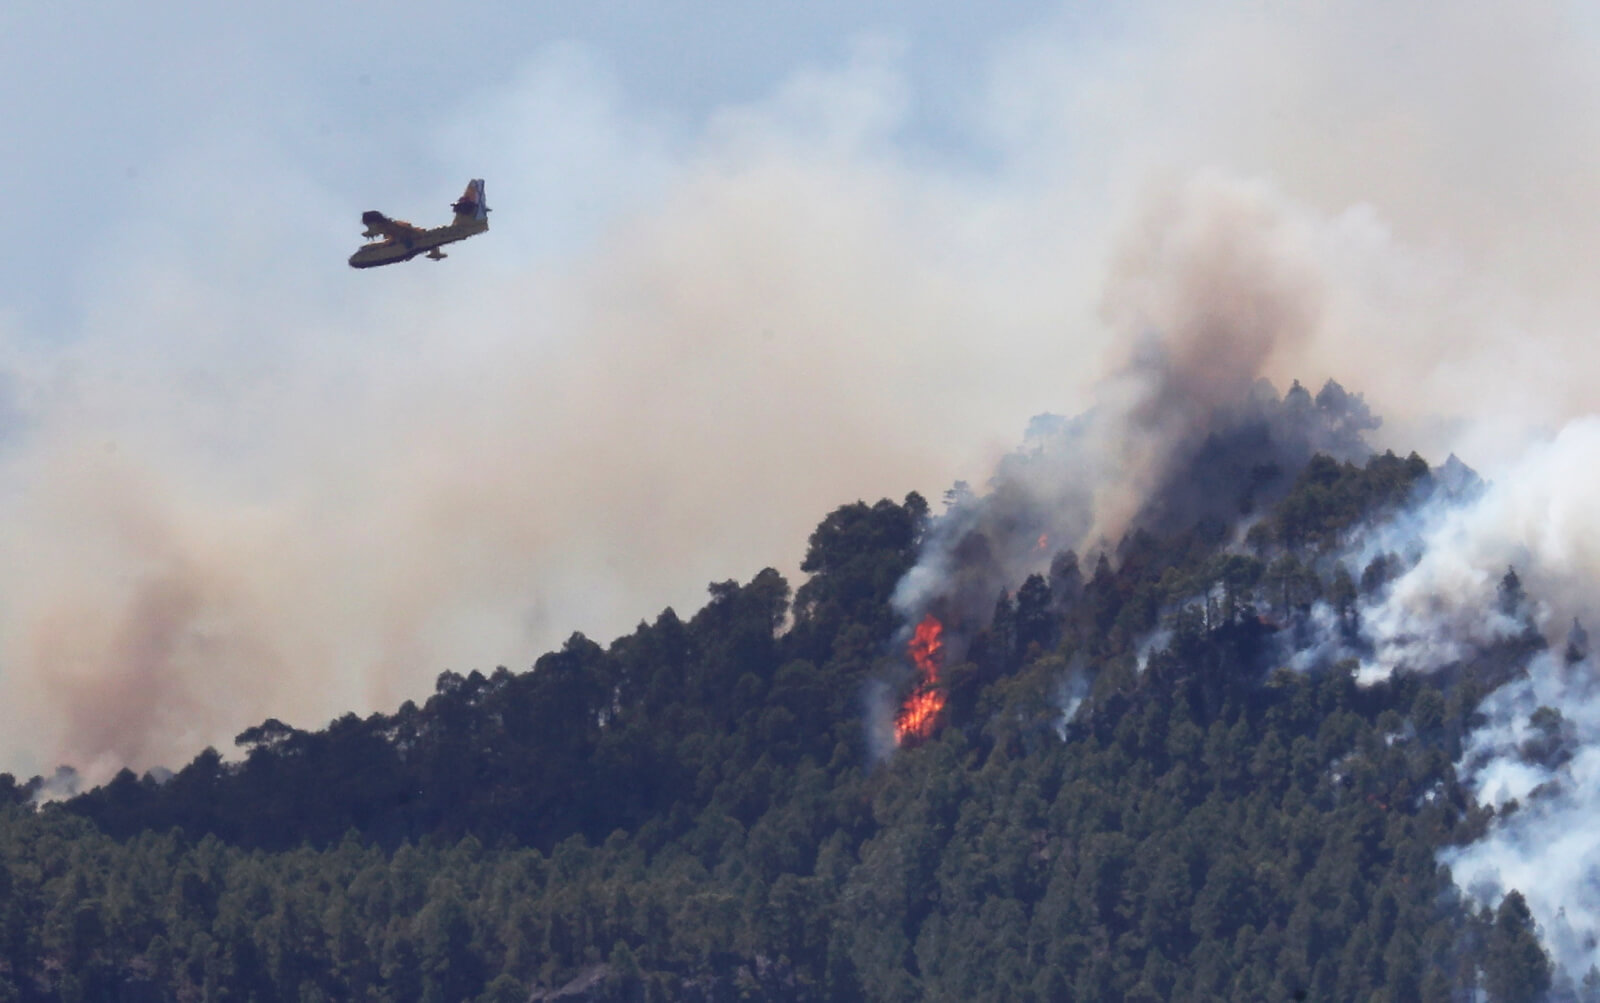 Ogromne pożary lasów w Hiszpanii fot. EPA/ELVIRA URQUIJO A. 